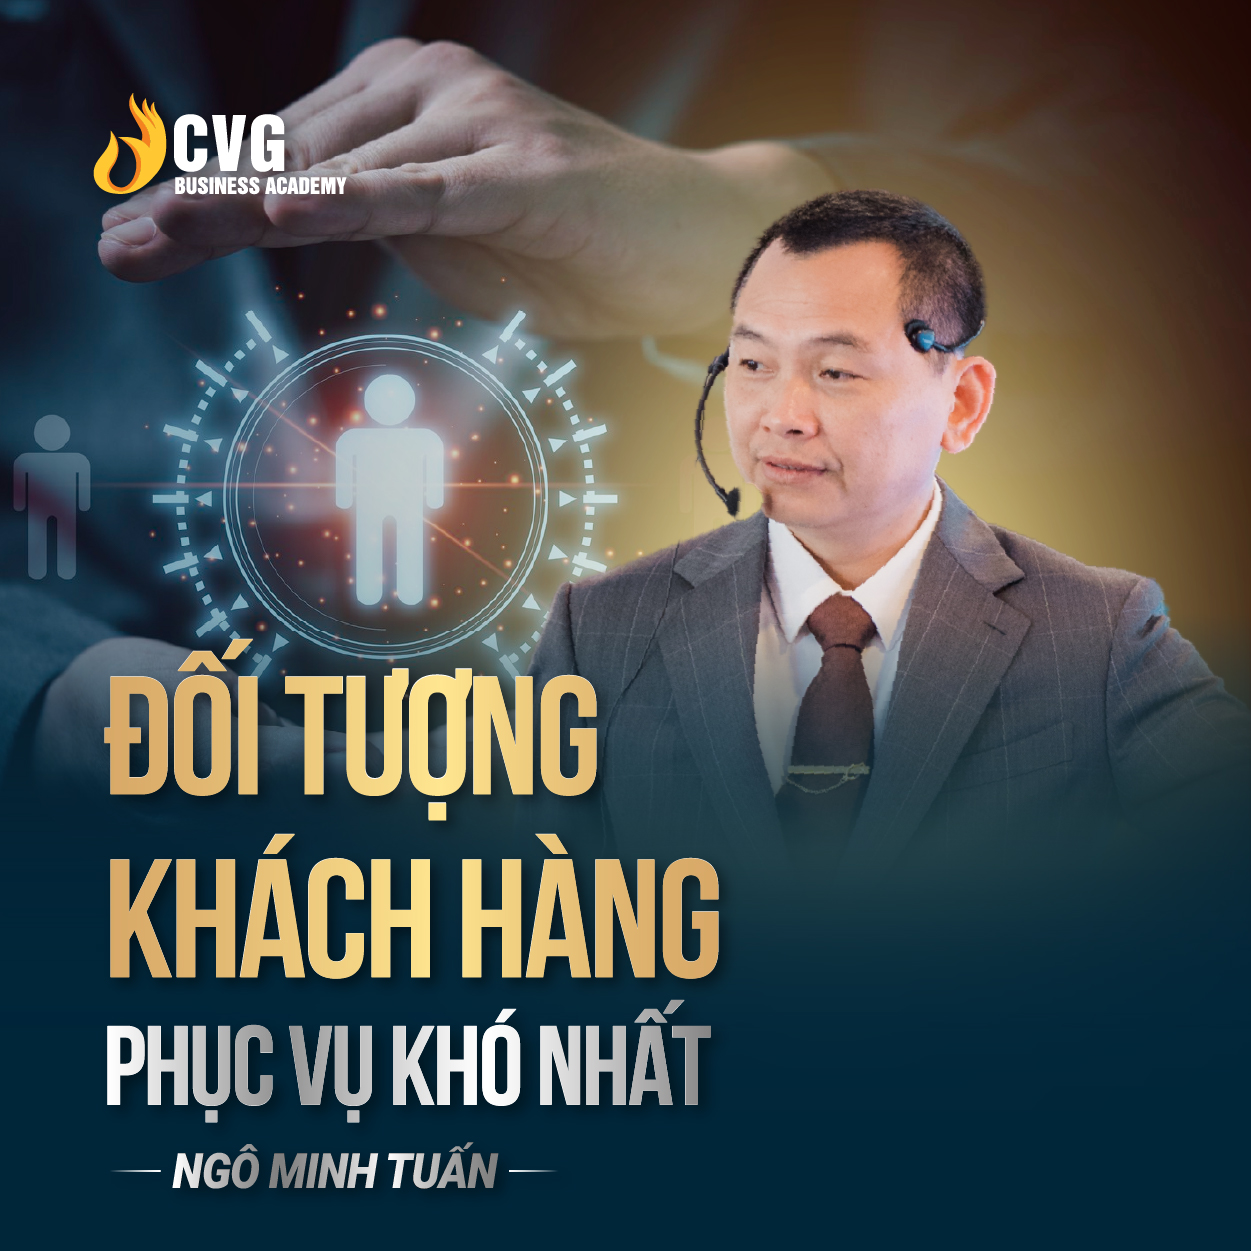 ĐỐI TƯỢNG KHÁCH HÀNG PHỤC VỤ KHÓ NHẤT | Ngô Minh Tuấn | Học Viện CEO Việt Nam Global